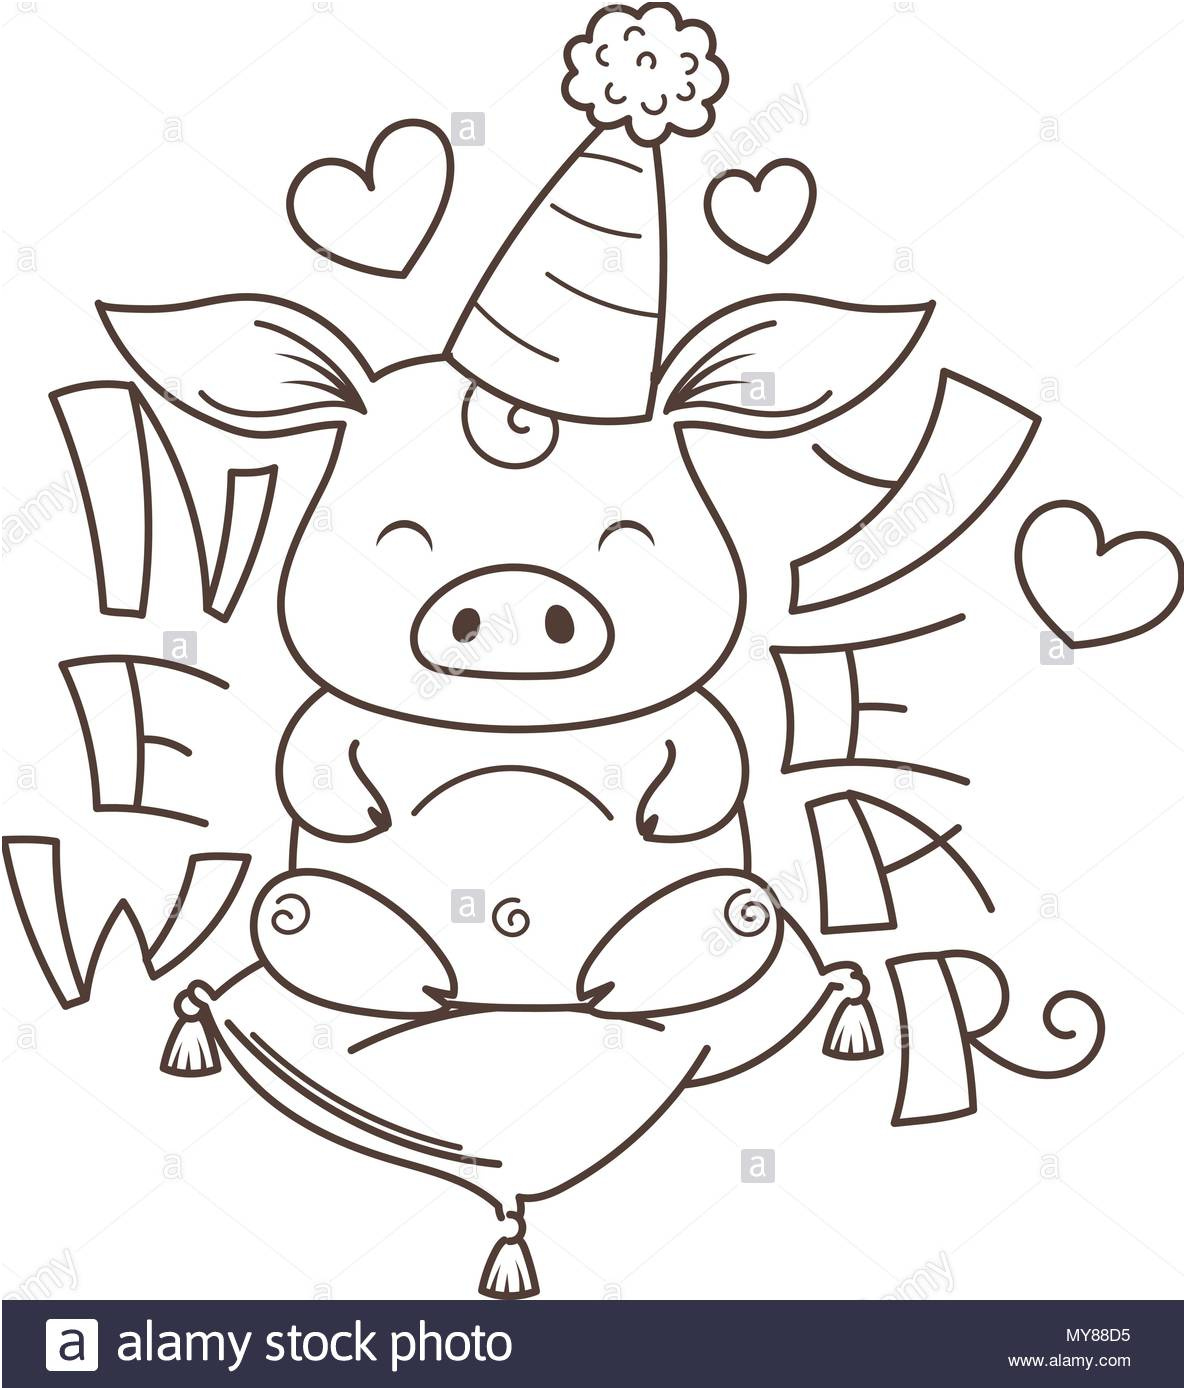 cute cartoon cochon dans lamour symbole de la nouvelle annee 2019 horoscope chinois coloriage image